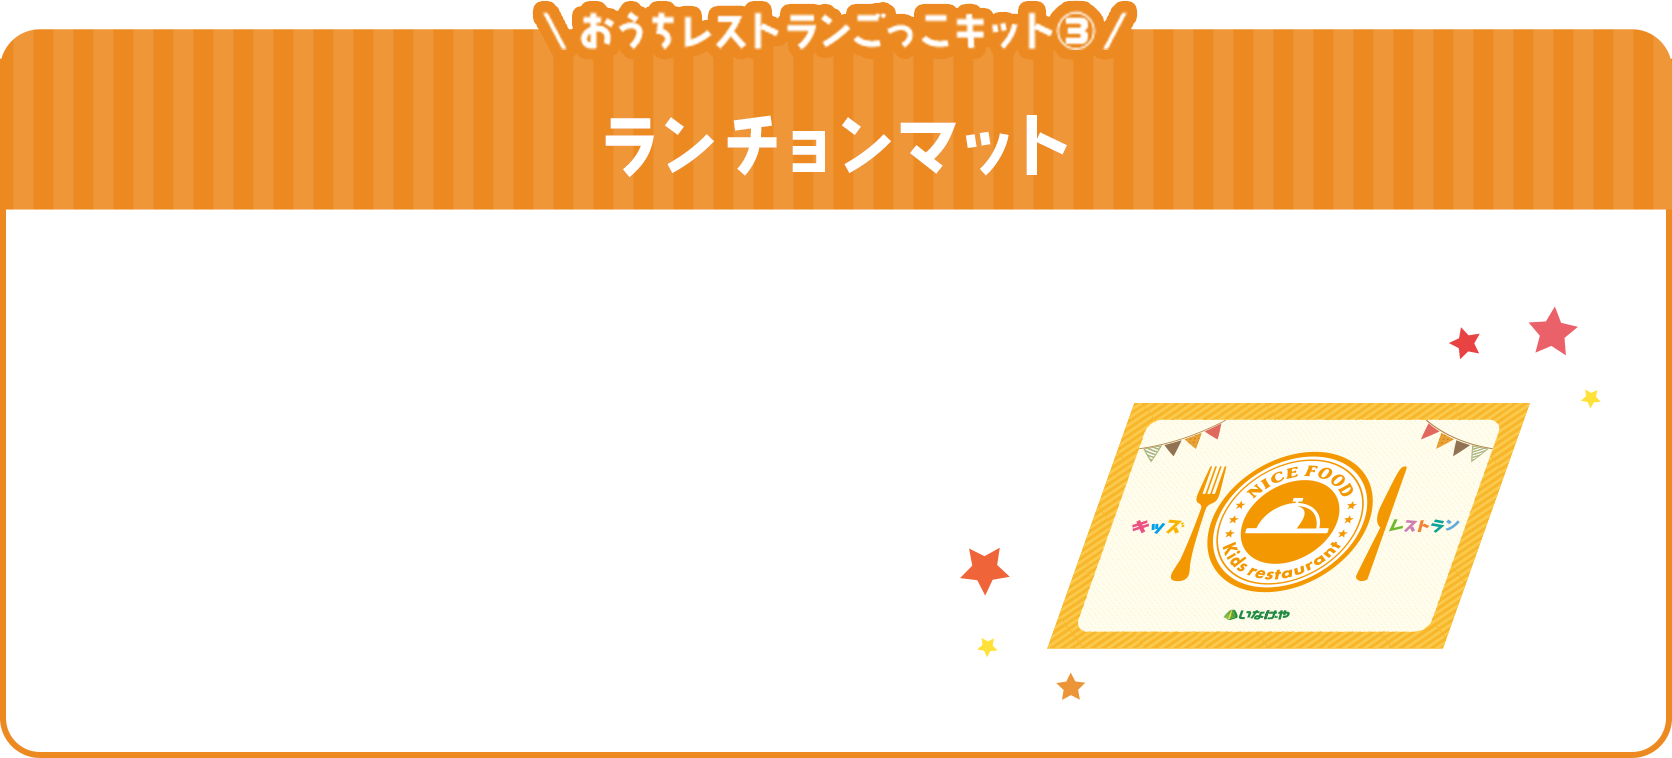 おうちレストランごっこキット③箸袋・ランチョマット